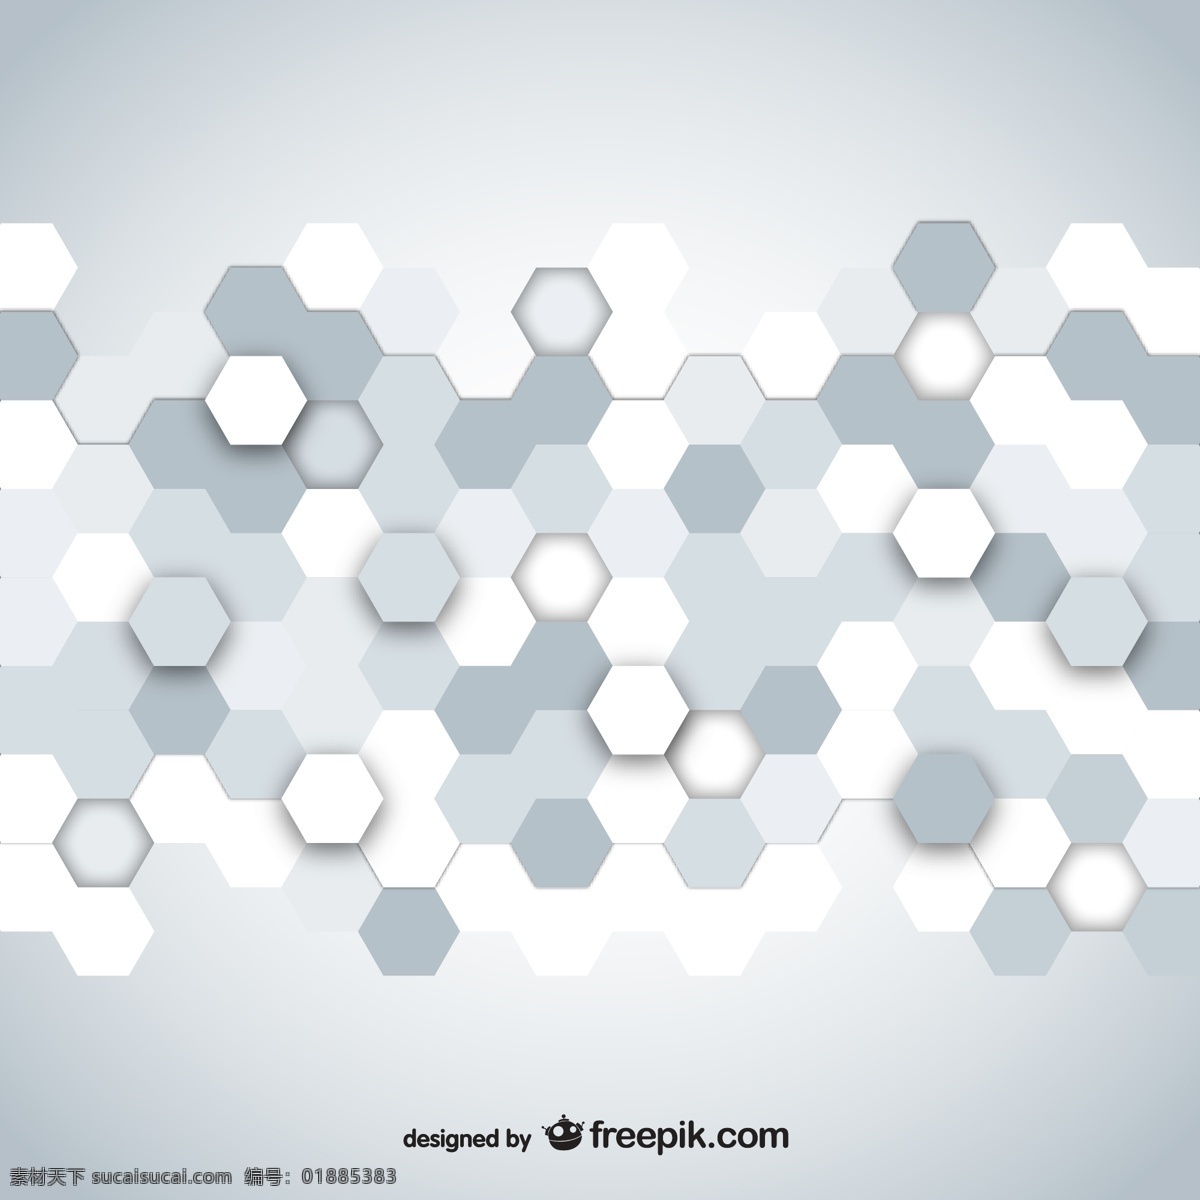 银色 六边形 蜂窝 形 背景 蜂窝形 矢量素材 科技感 源文件